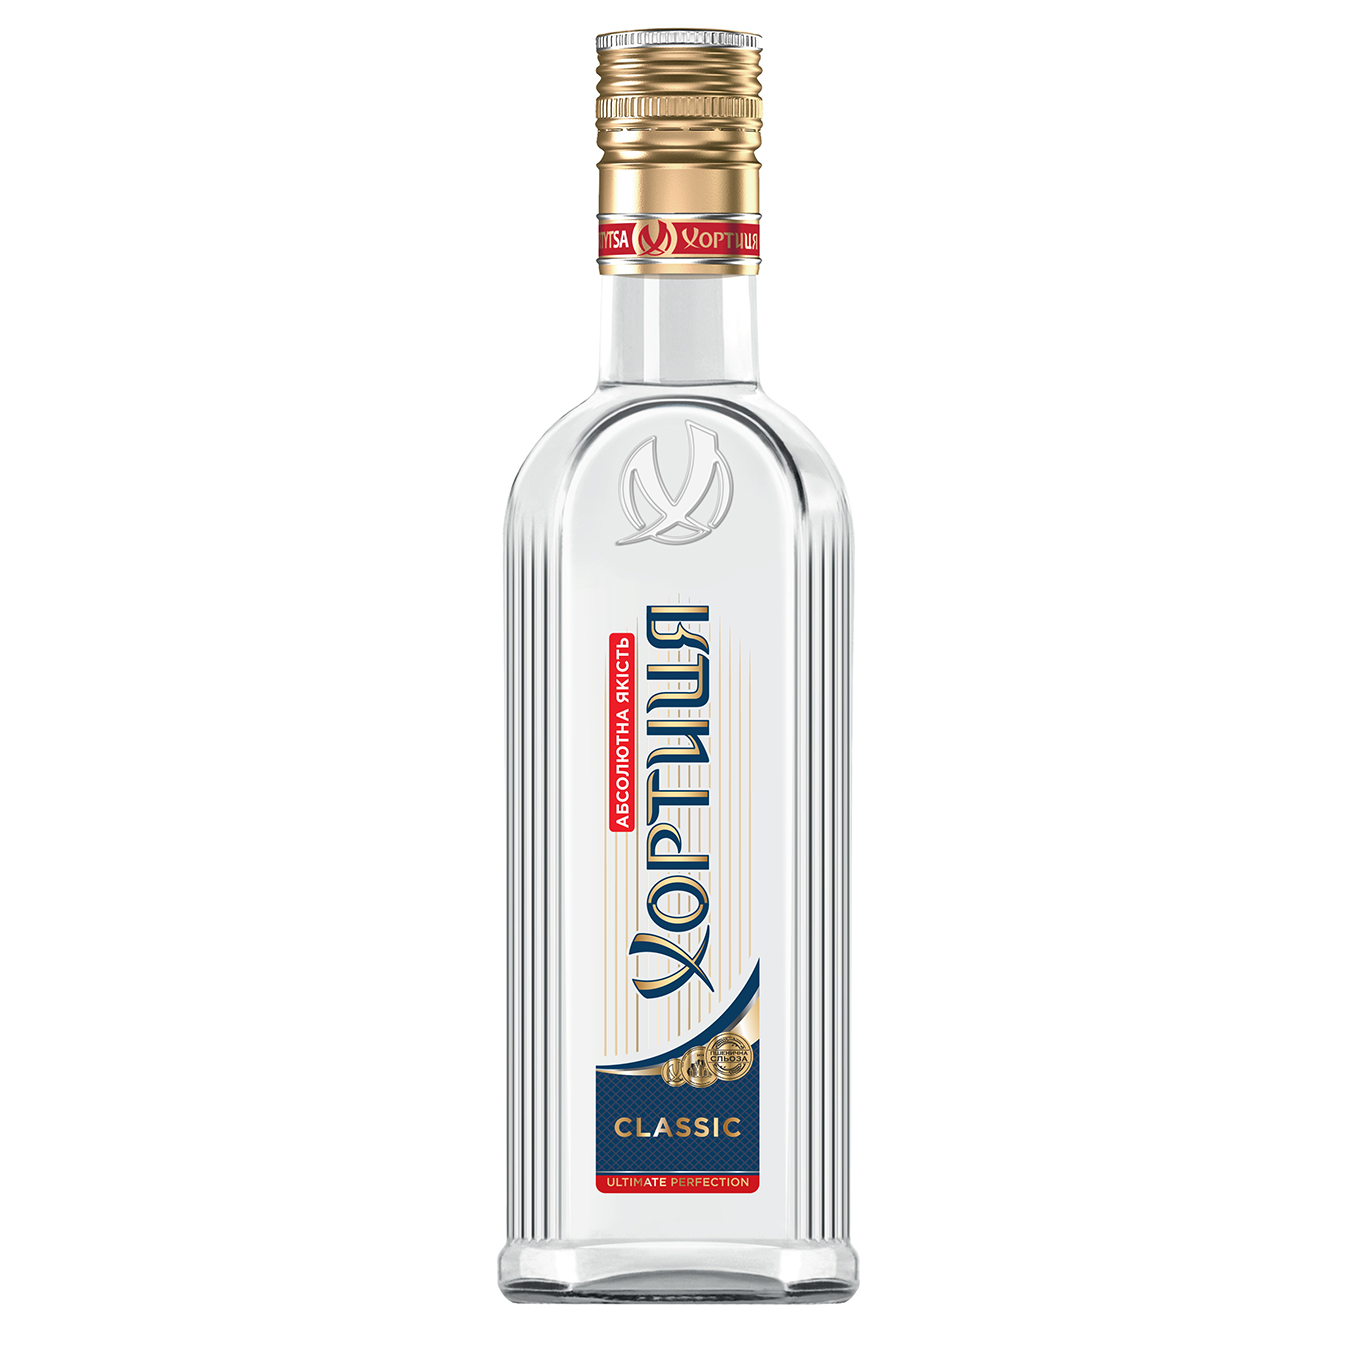 Khortytsia Vodka Classic 40% stock 0.5 l